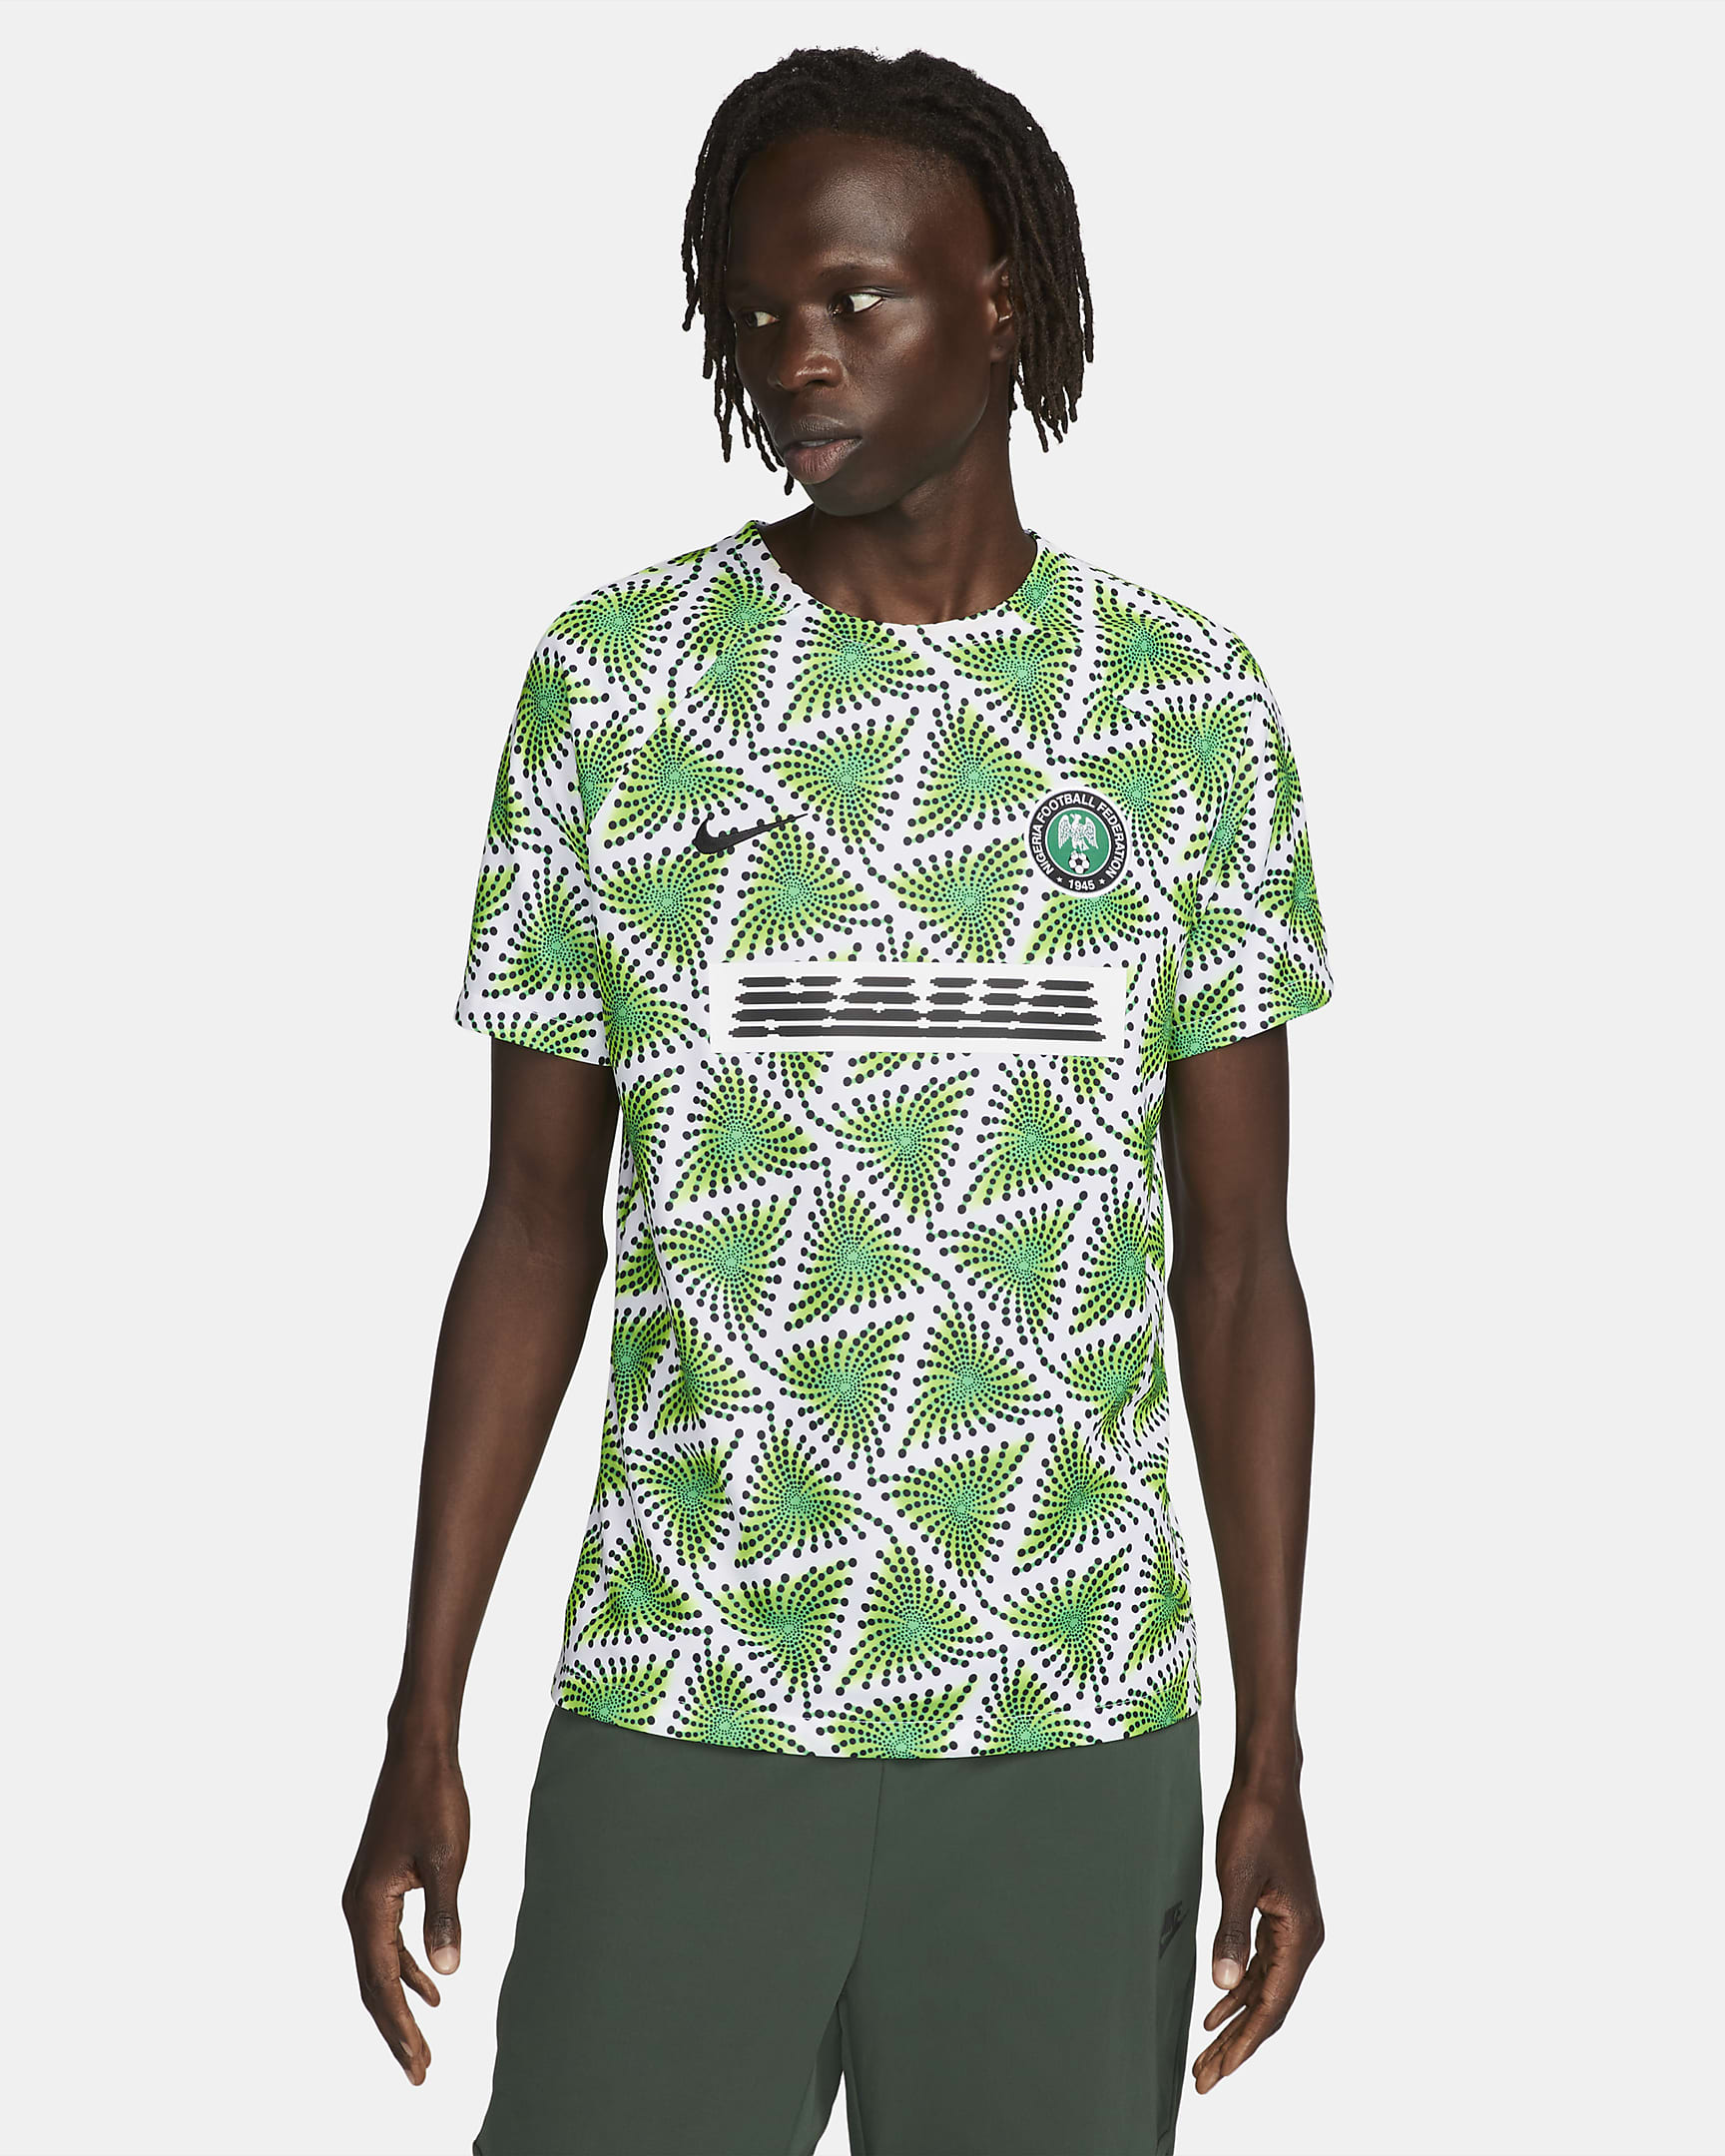 Nigeria Men's Nike Dri-FIT Pre-Match Soccer Top. Nike.com